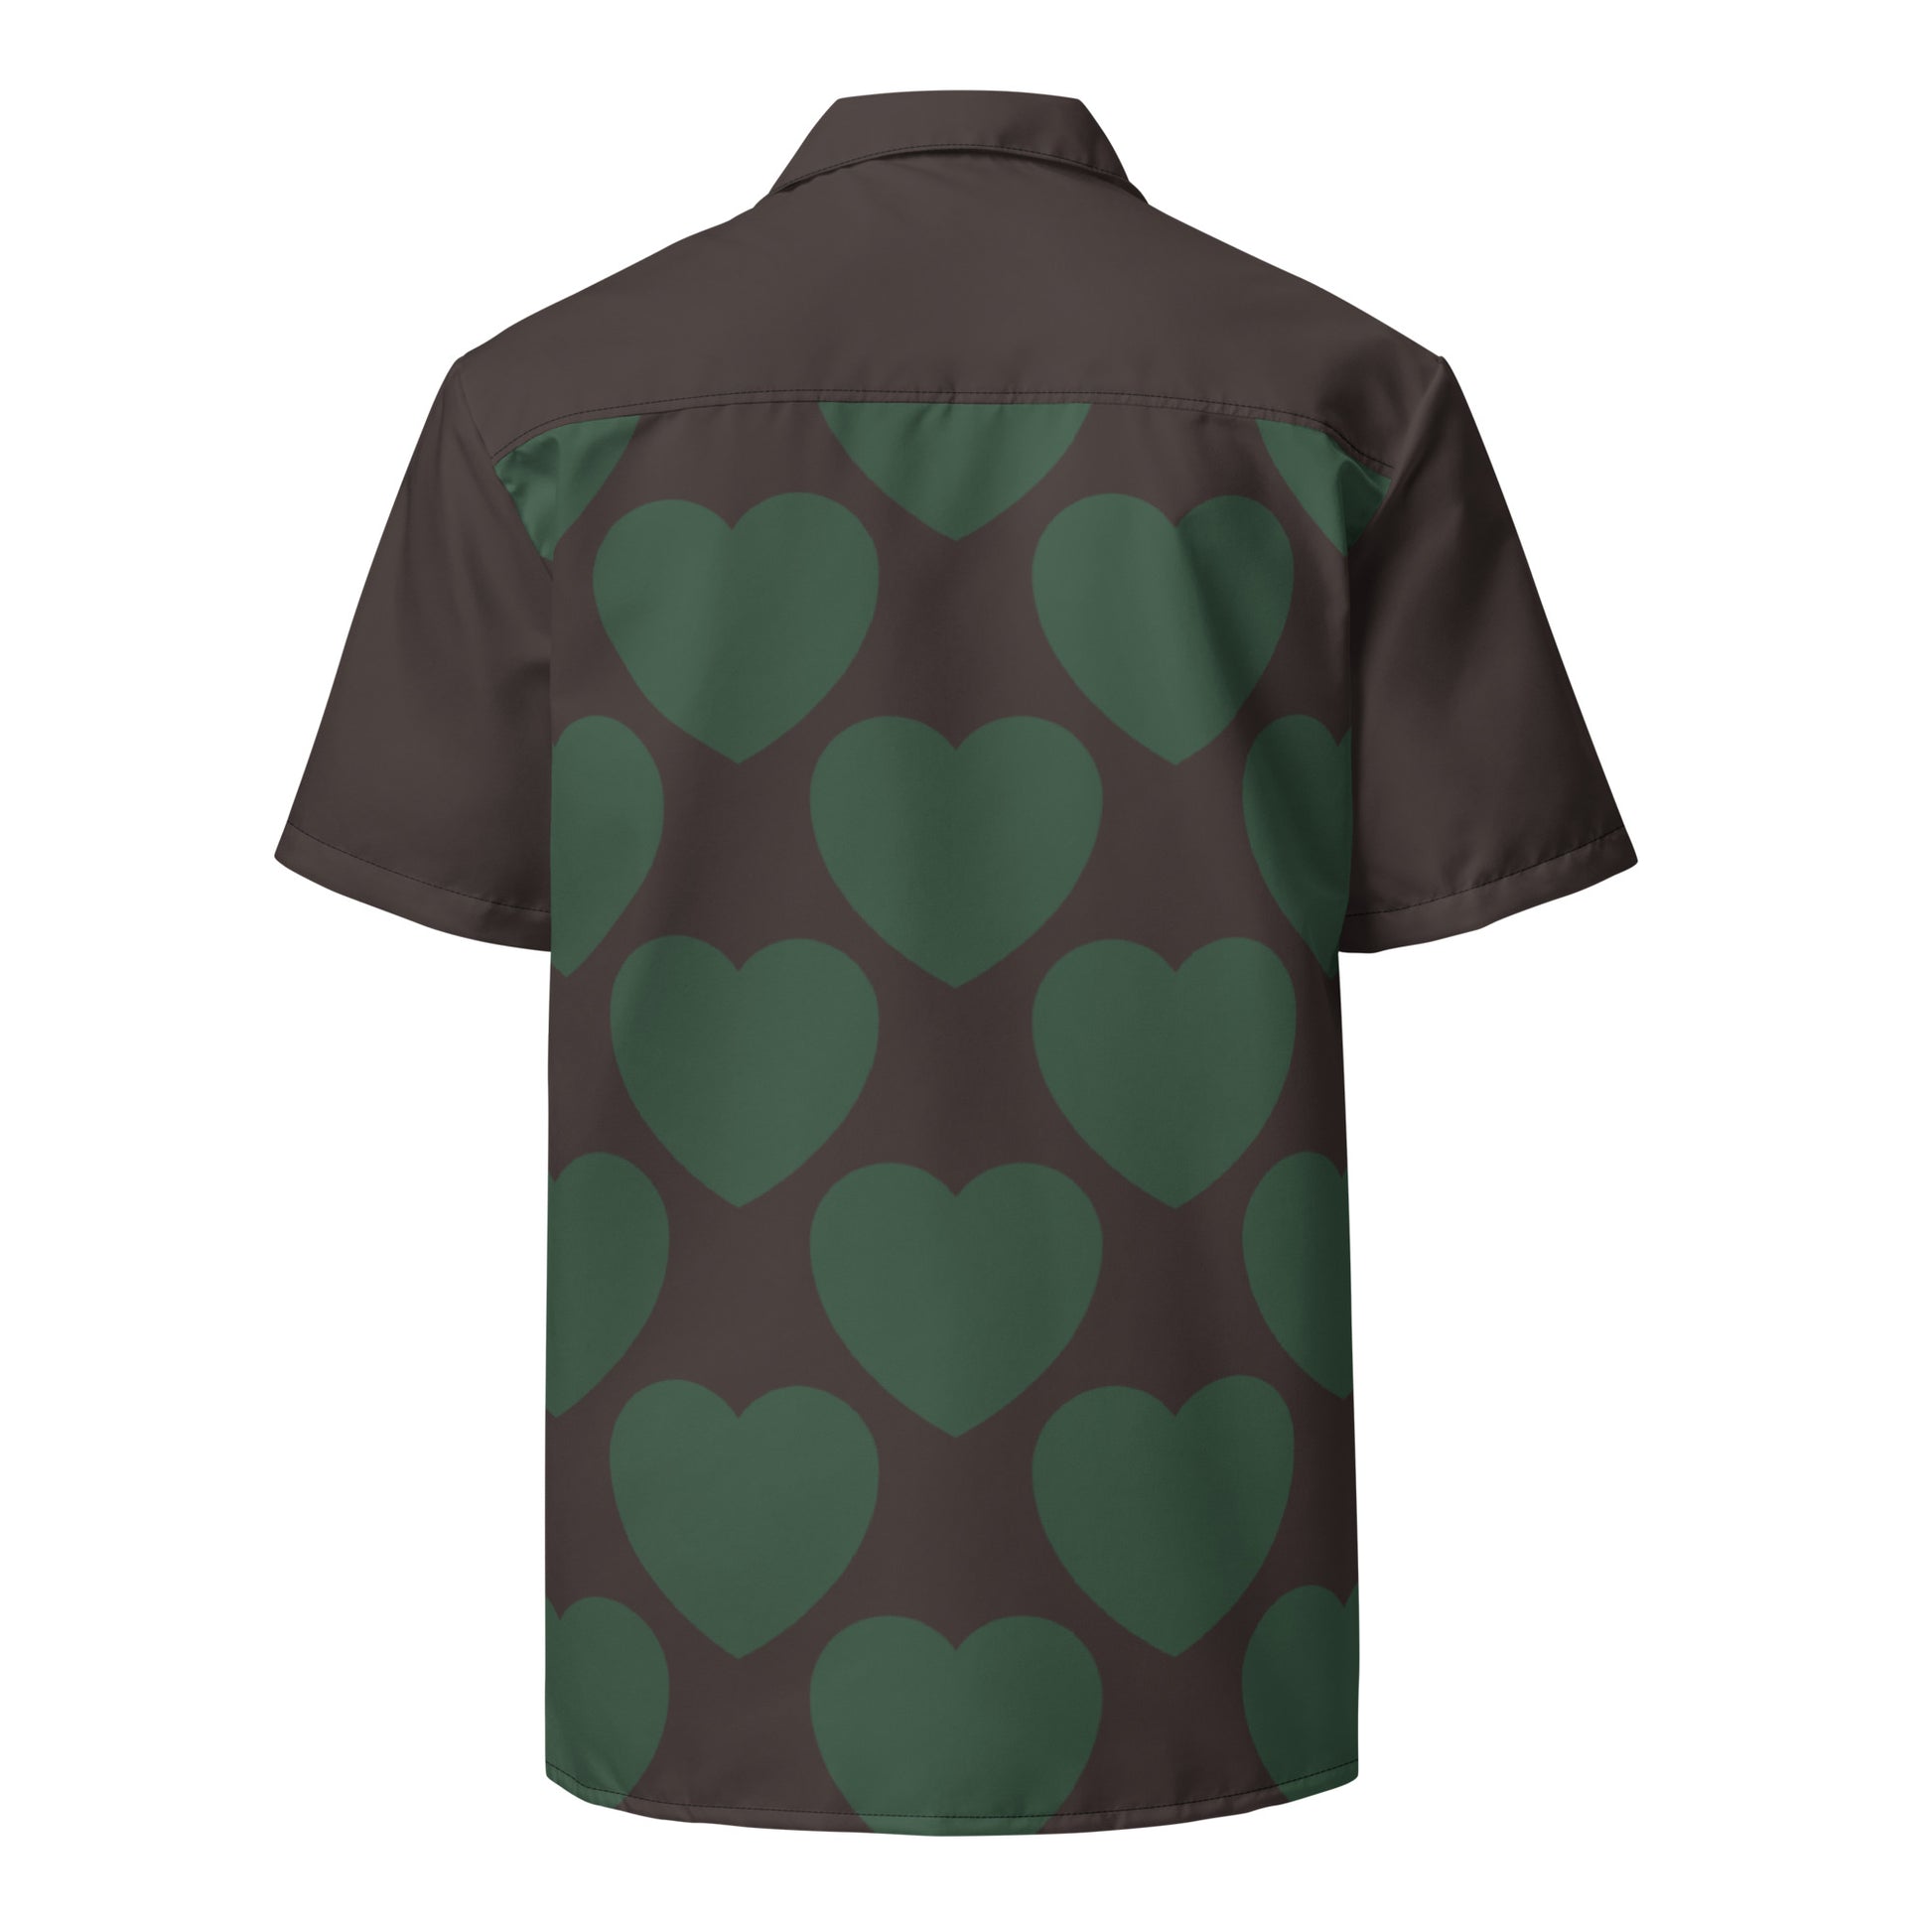 ELLIE LOVE forest - Unisex button shirt